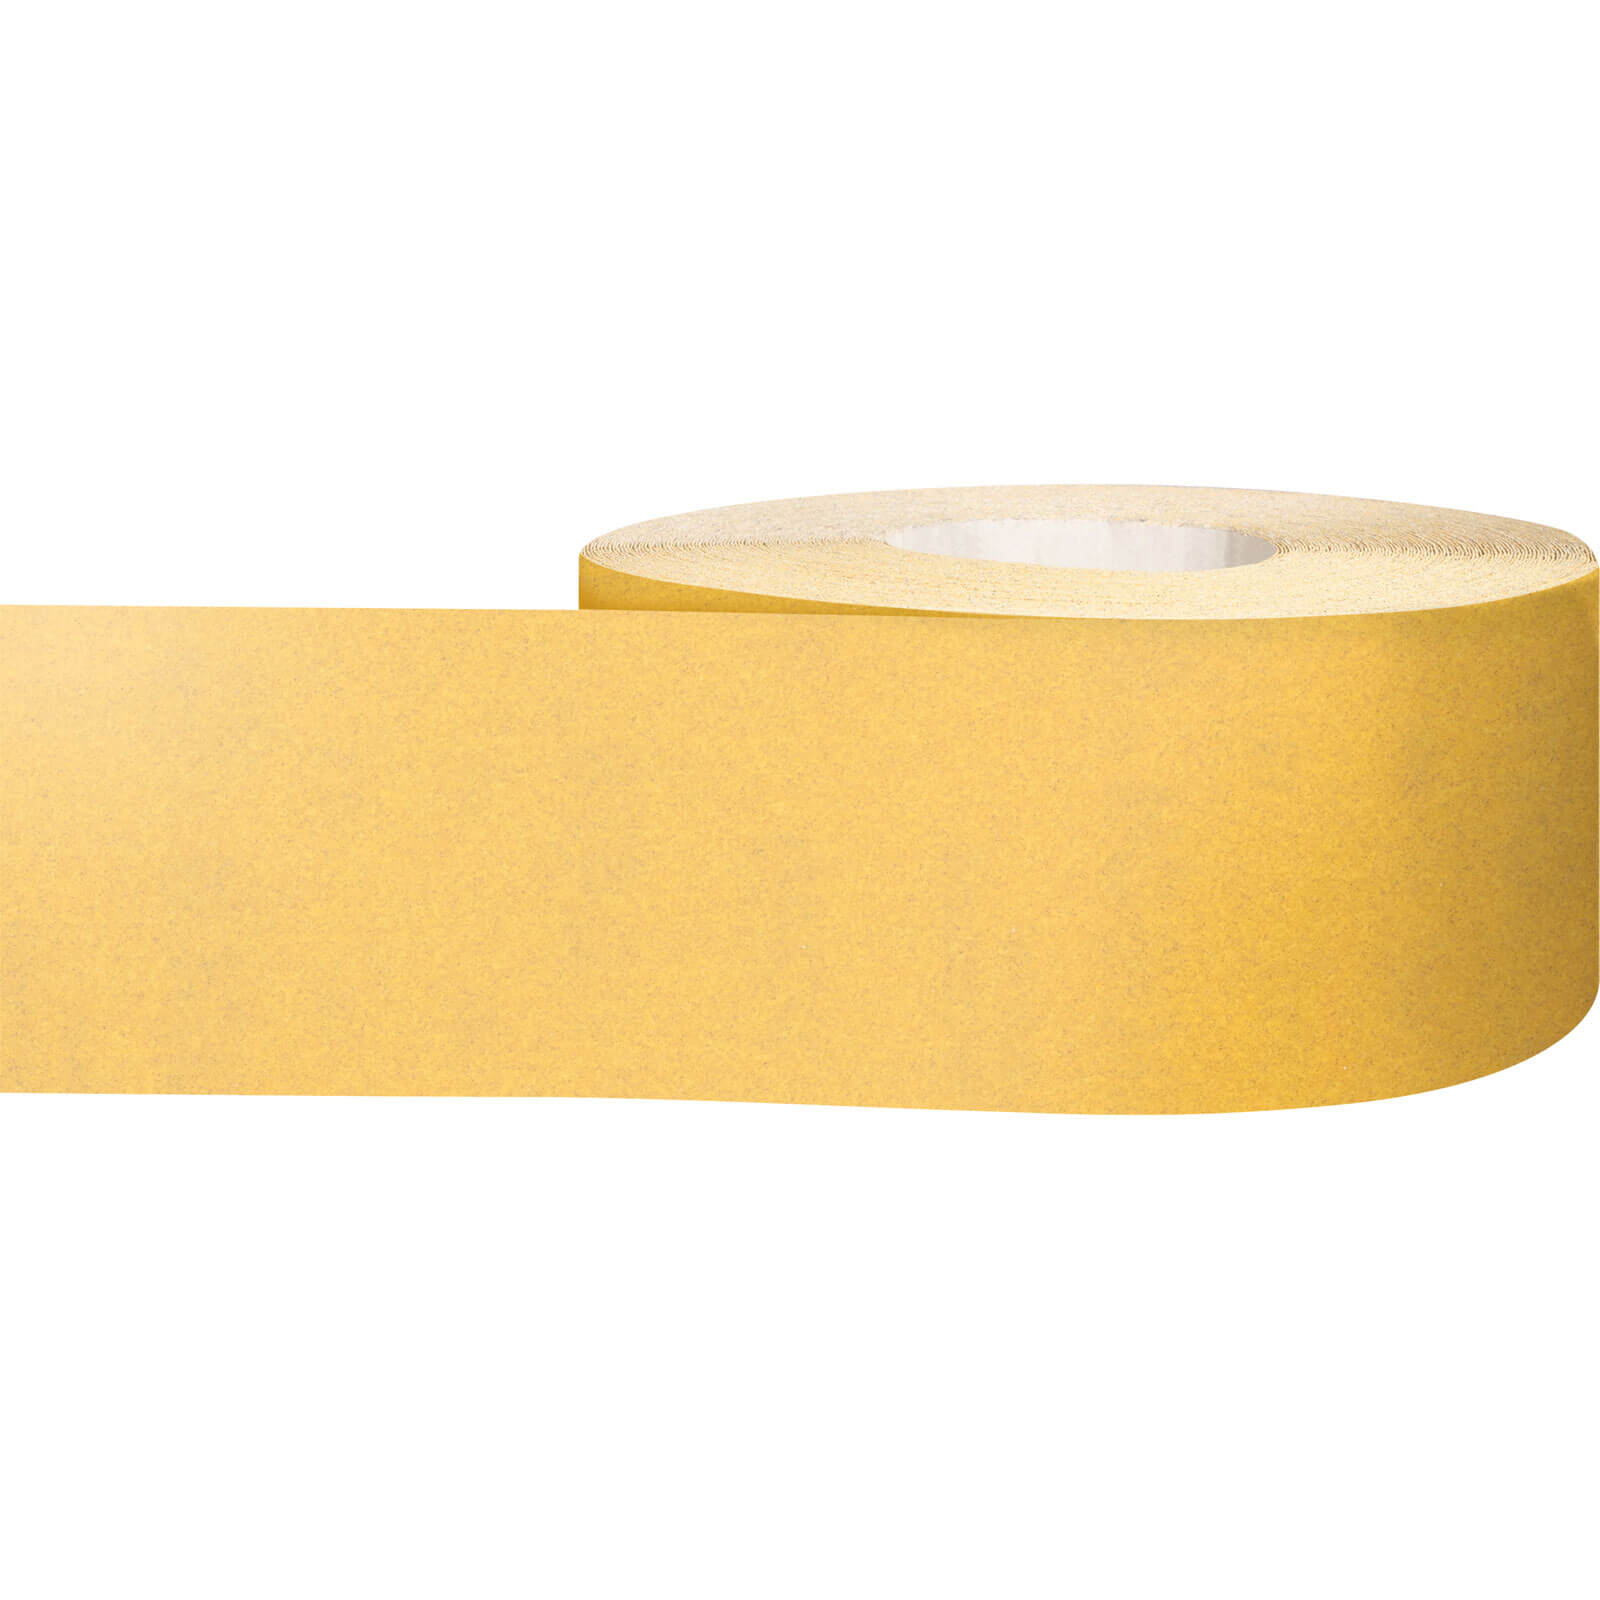 Photos - Abrasive Wheel / Belt Bosch Expert C470 Best for Wood and Paint Sanding Roll 115mm 50m 240g 2608 